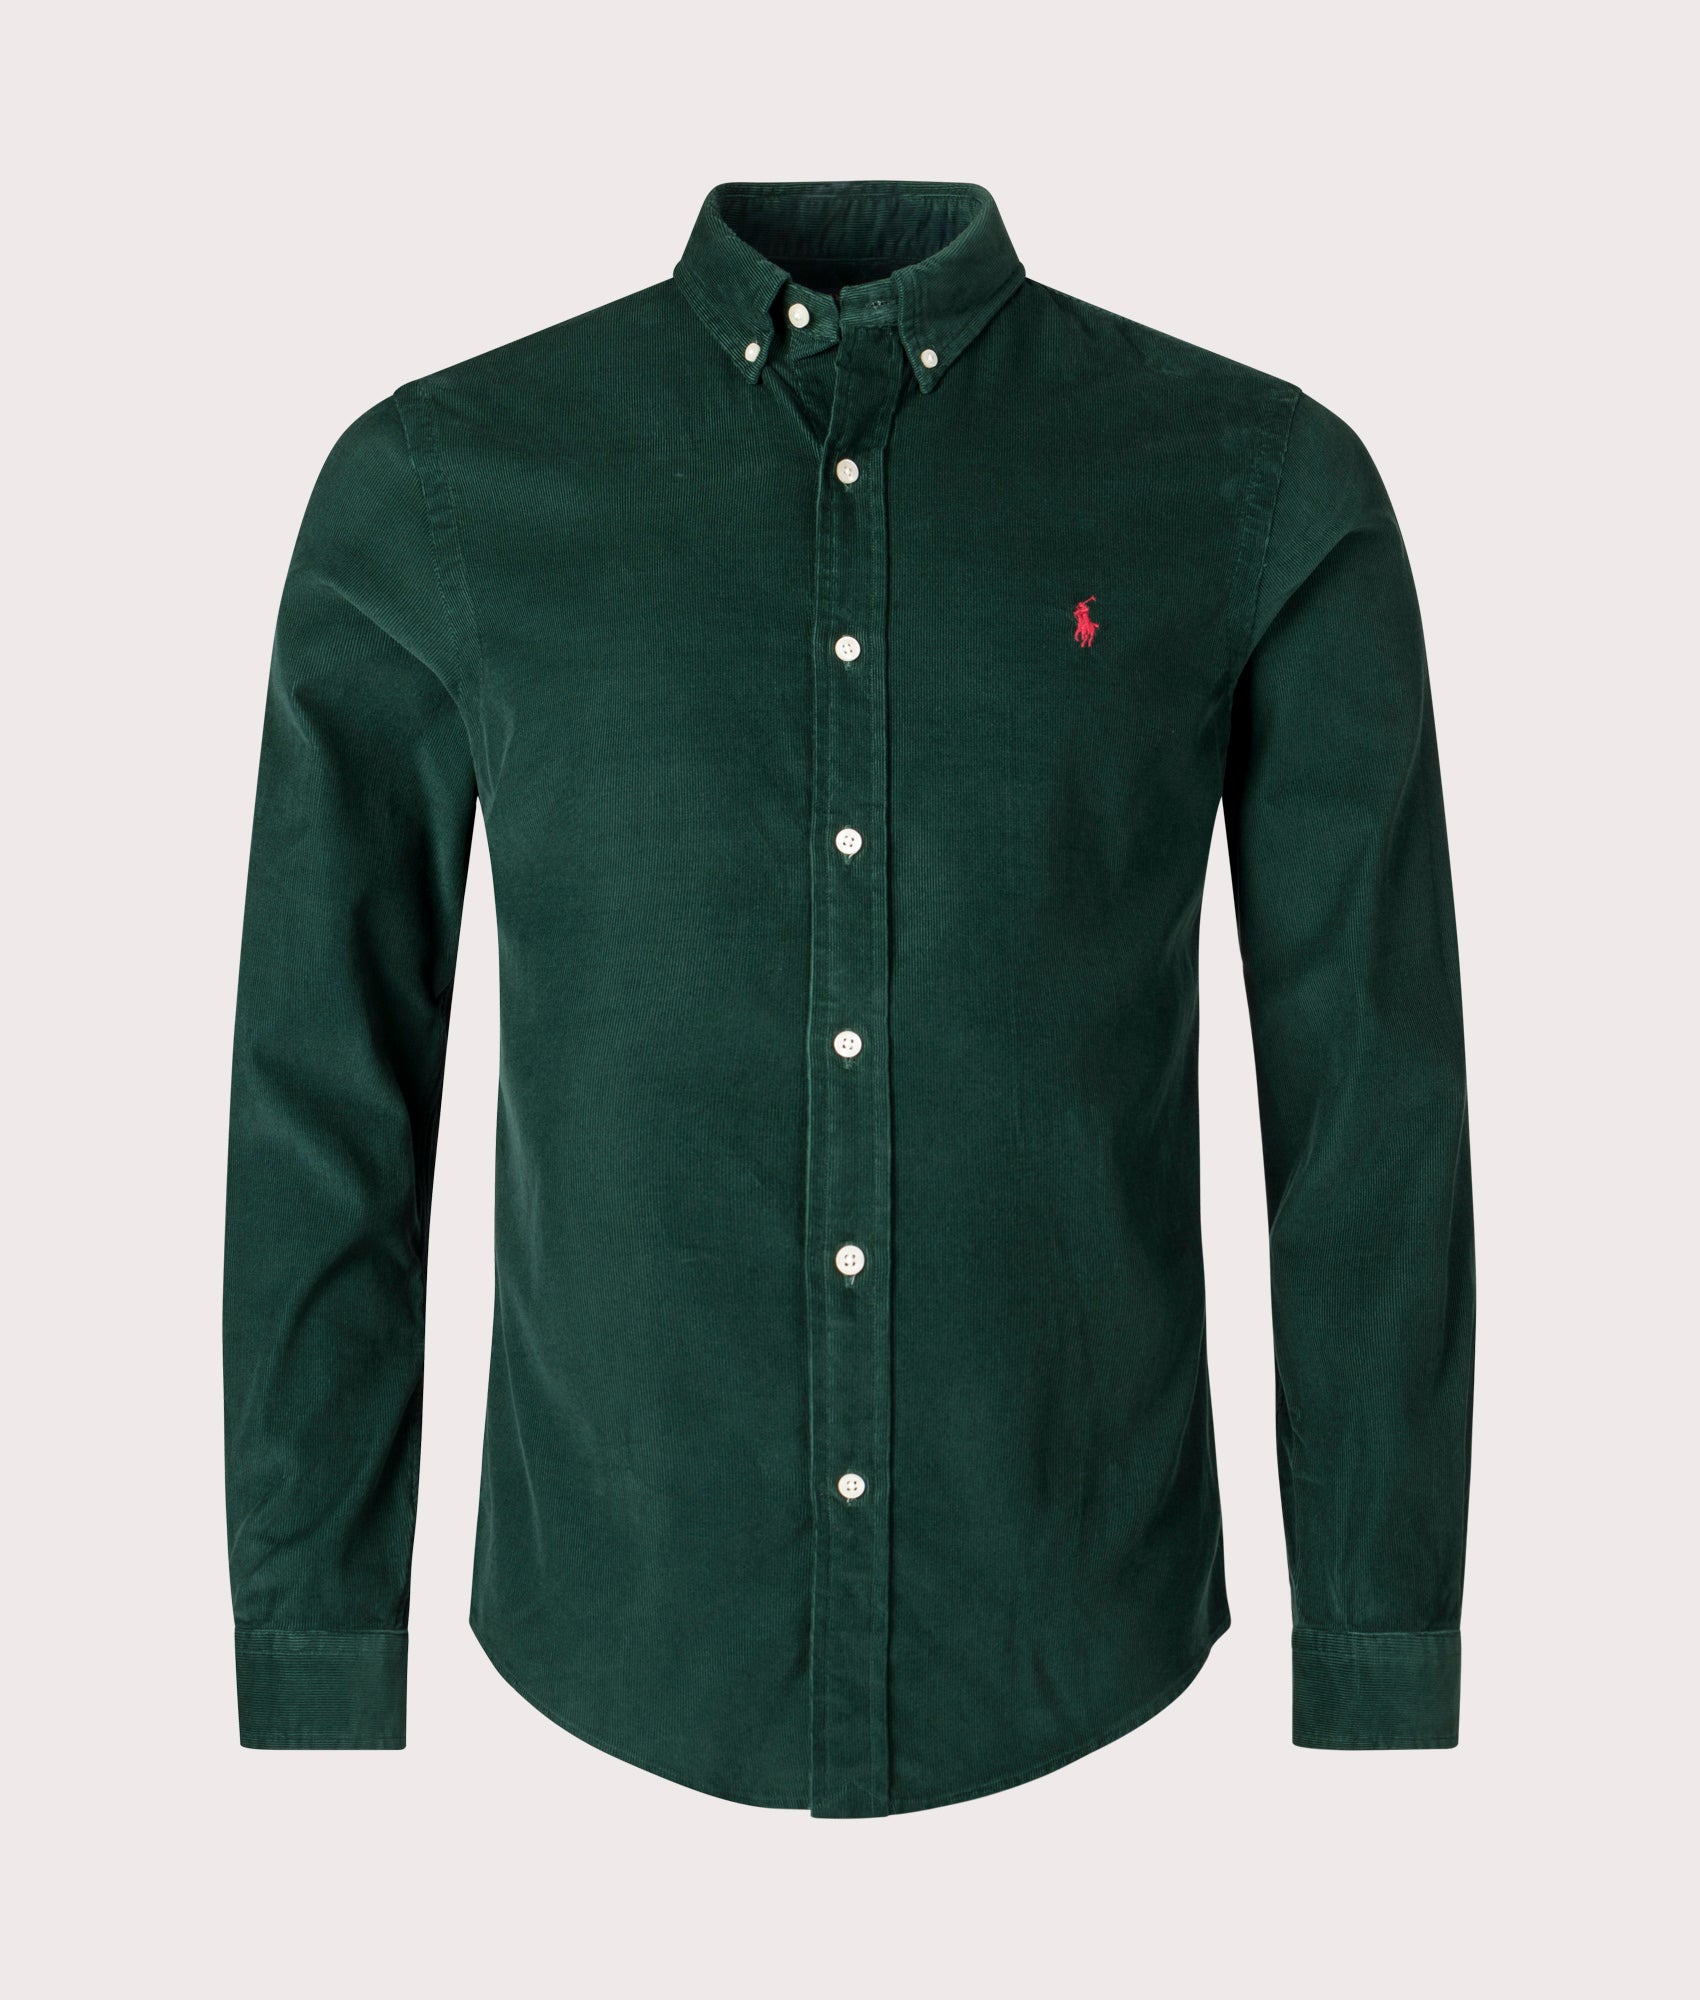 Polo Ralph Lauren Mens Slim Fit Corduroy Shirt - Colour: 018 Moss Agate - Size: Large